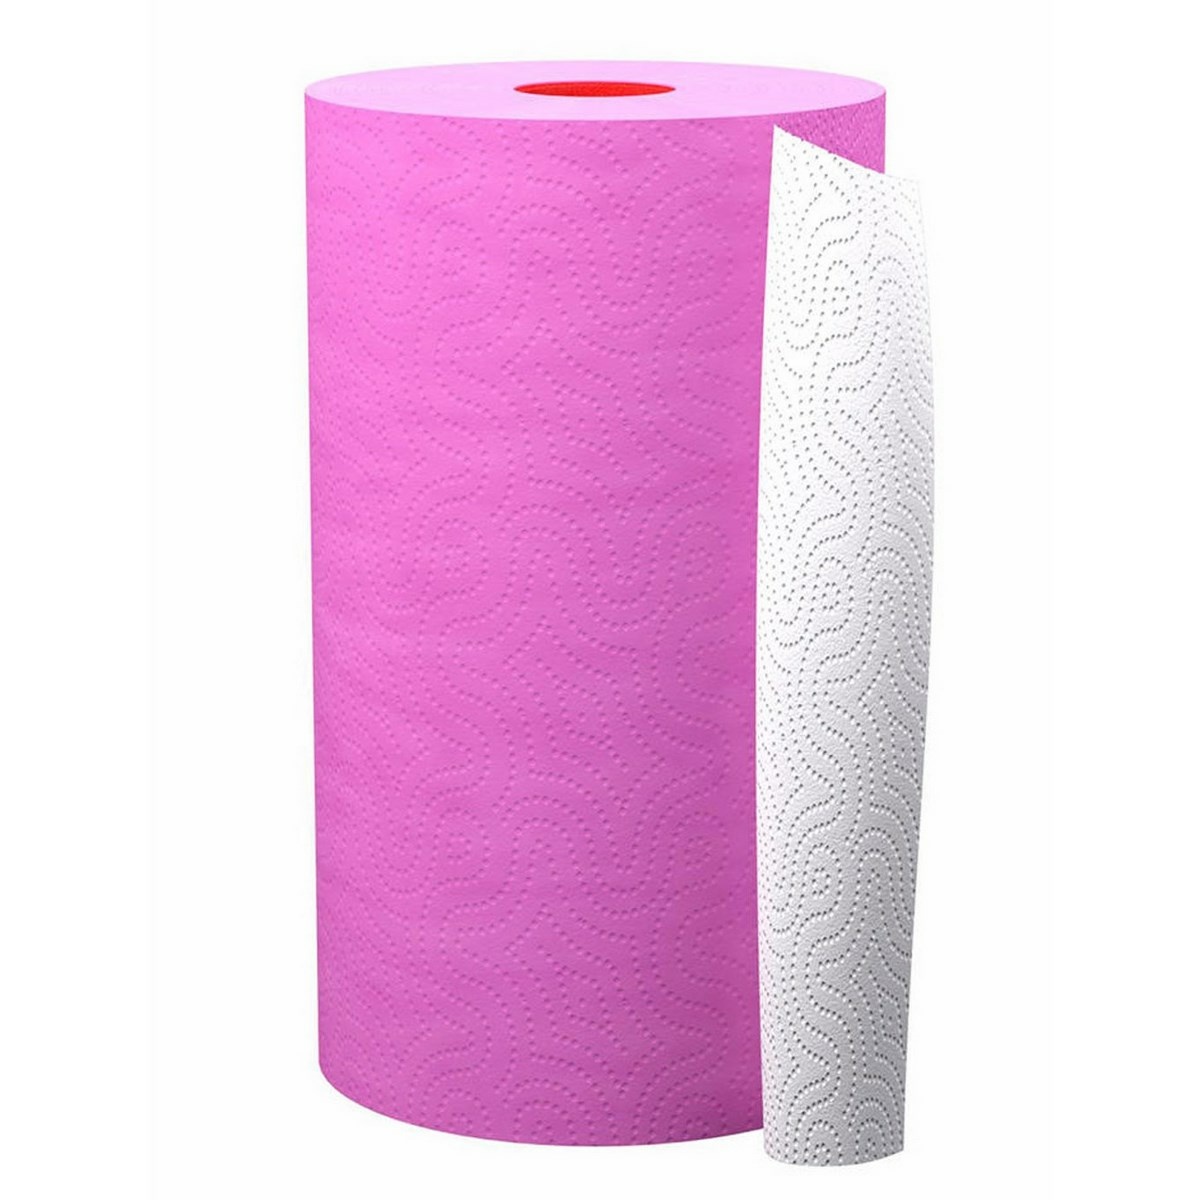 Papírové kuchyňské utěrky růžové 2-vrstvé